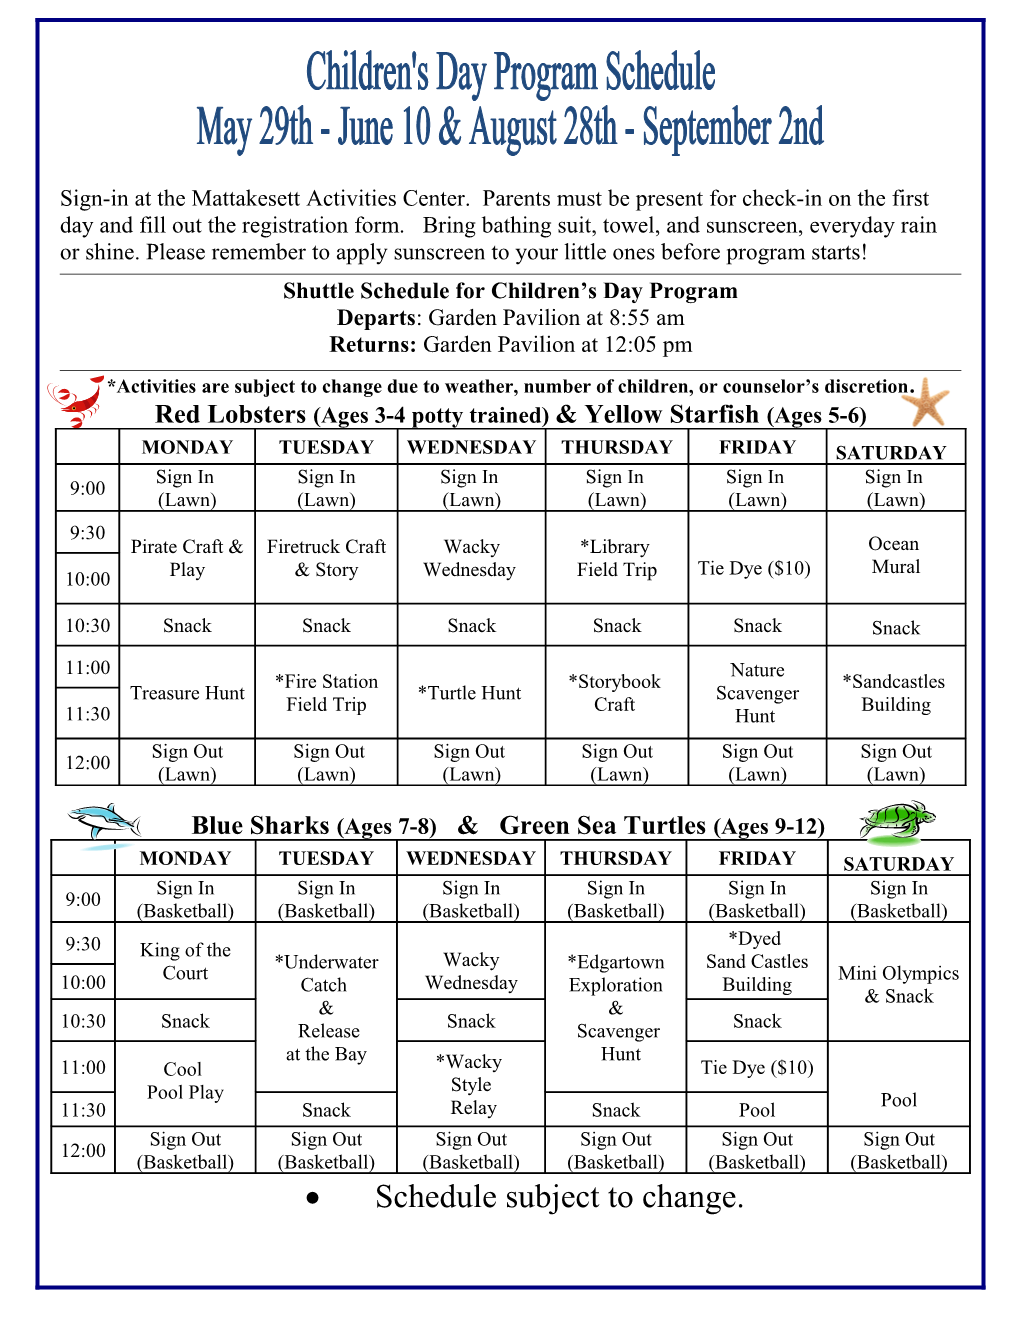 Shuttle Schedule for Children S Day Program